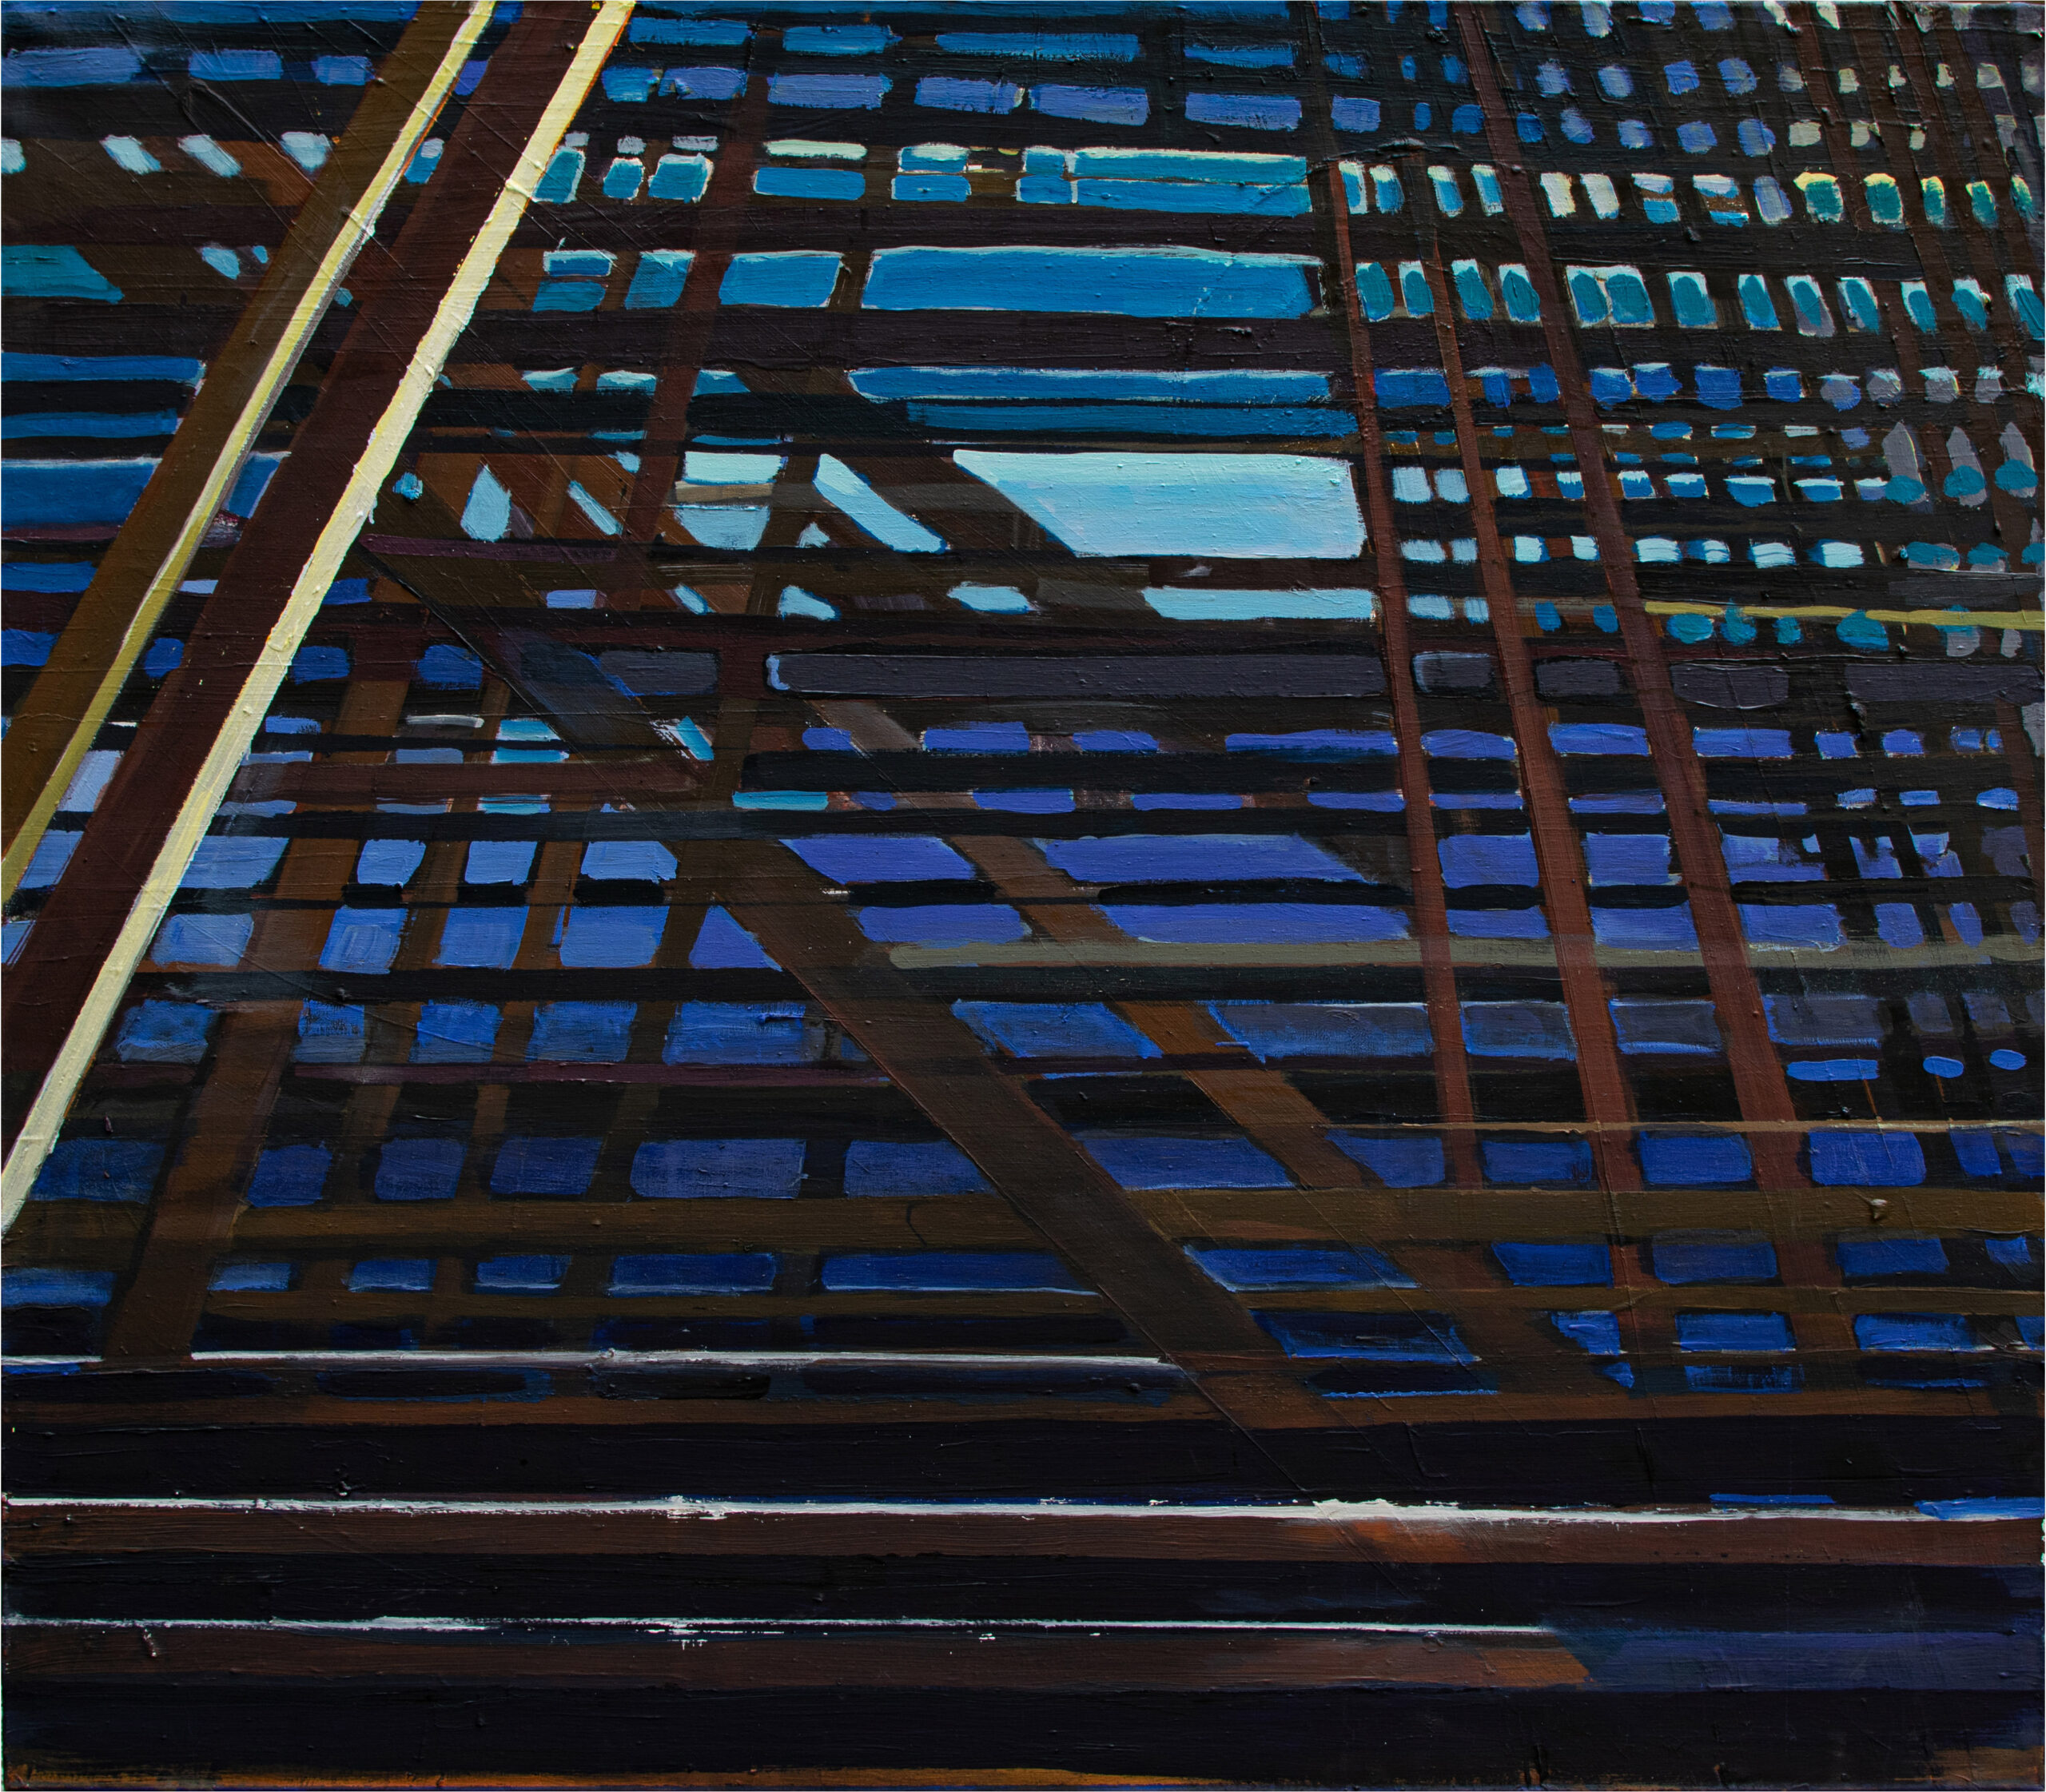 Gitter, 140 x 120 cm, 2018